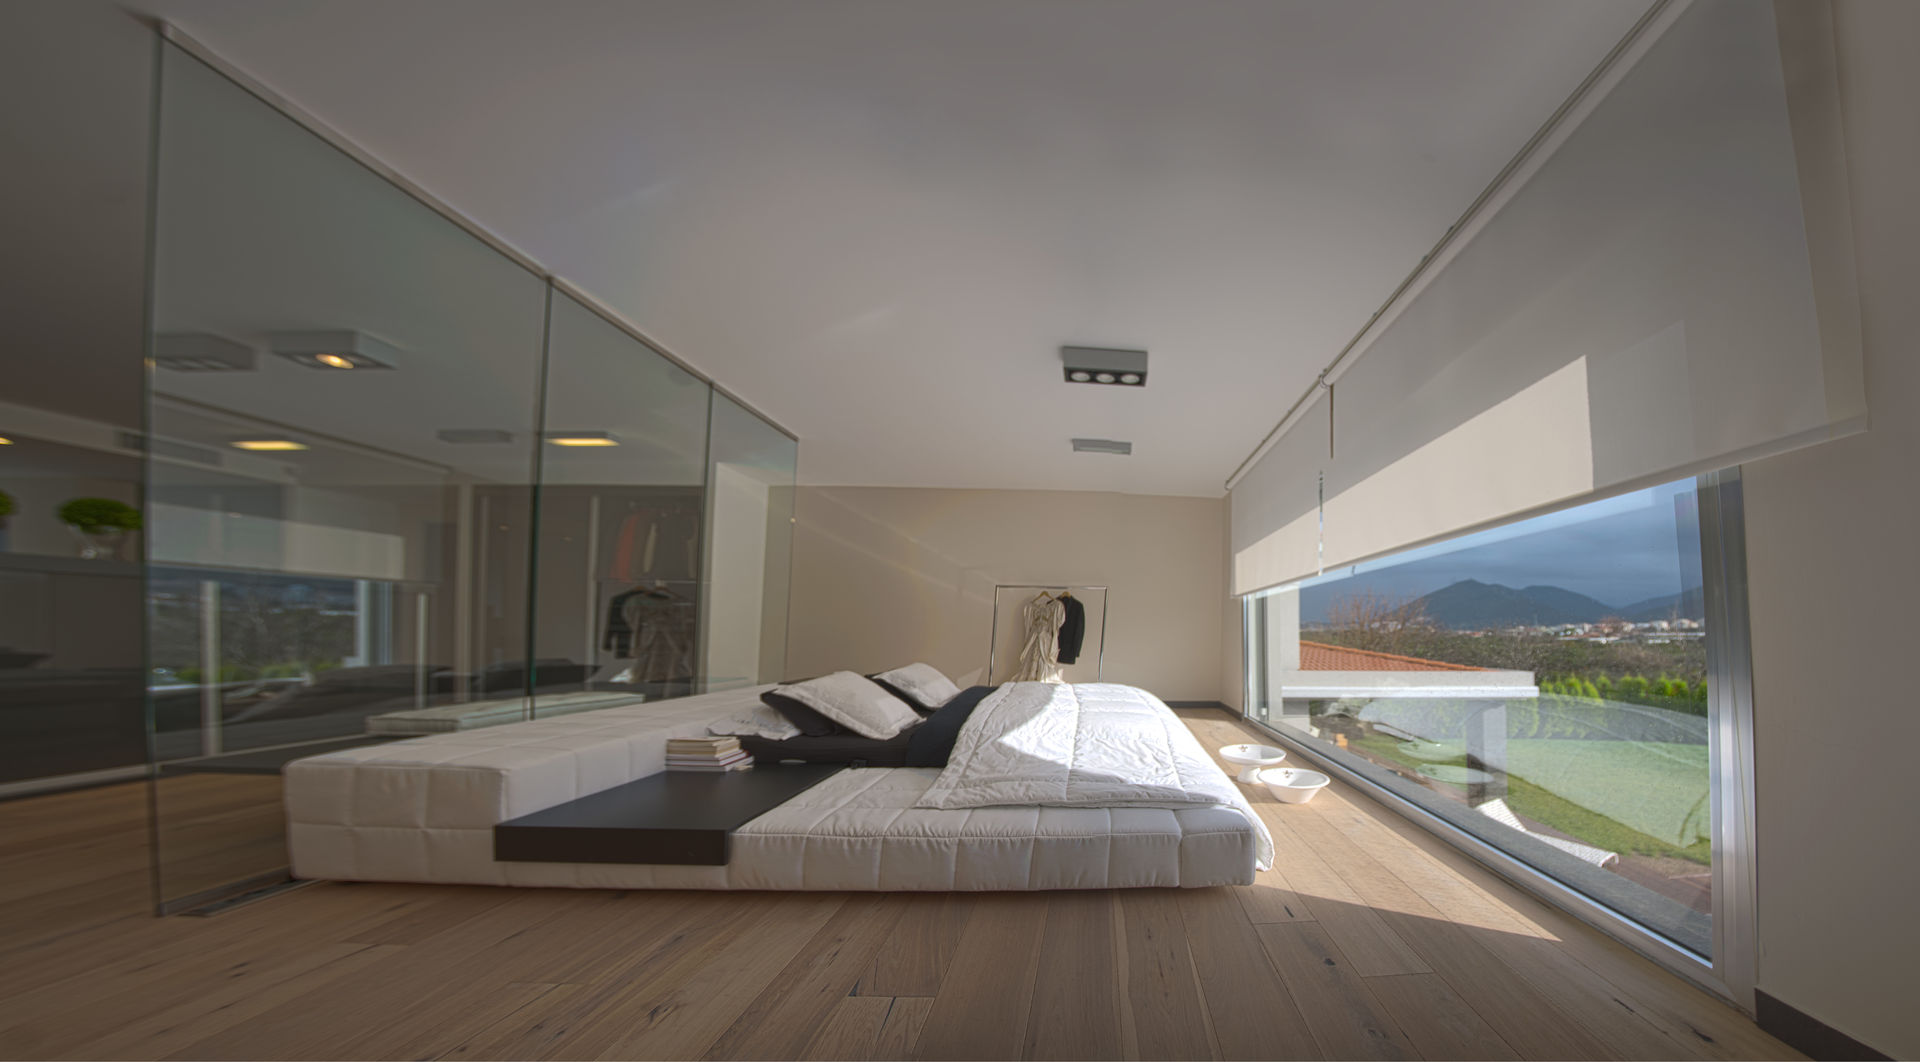 SAHİLEVLERİ PROJE, As Tasarım - Mimarlık As Tasarım - Mimarlık Modern Yatak Odası Yataklar & Yatak Başları